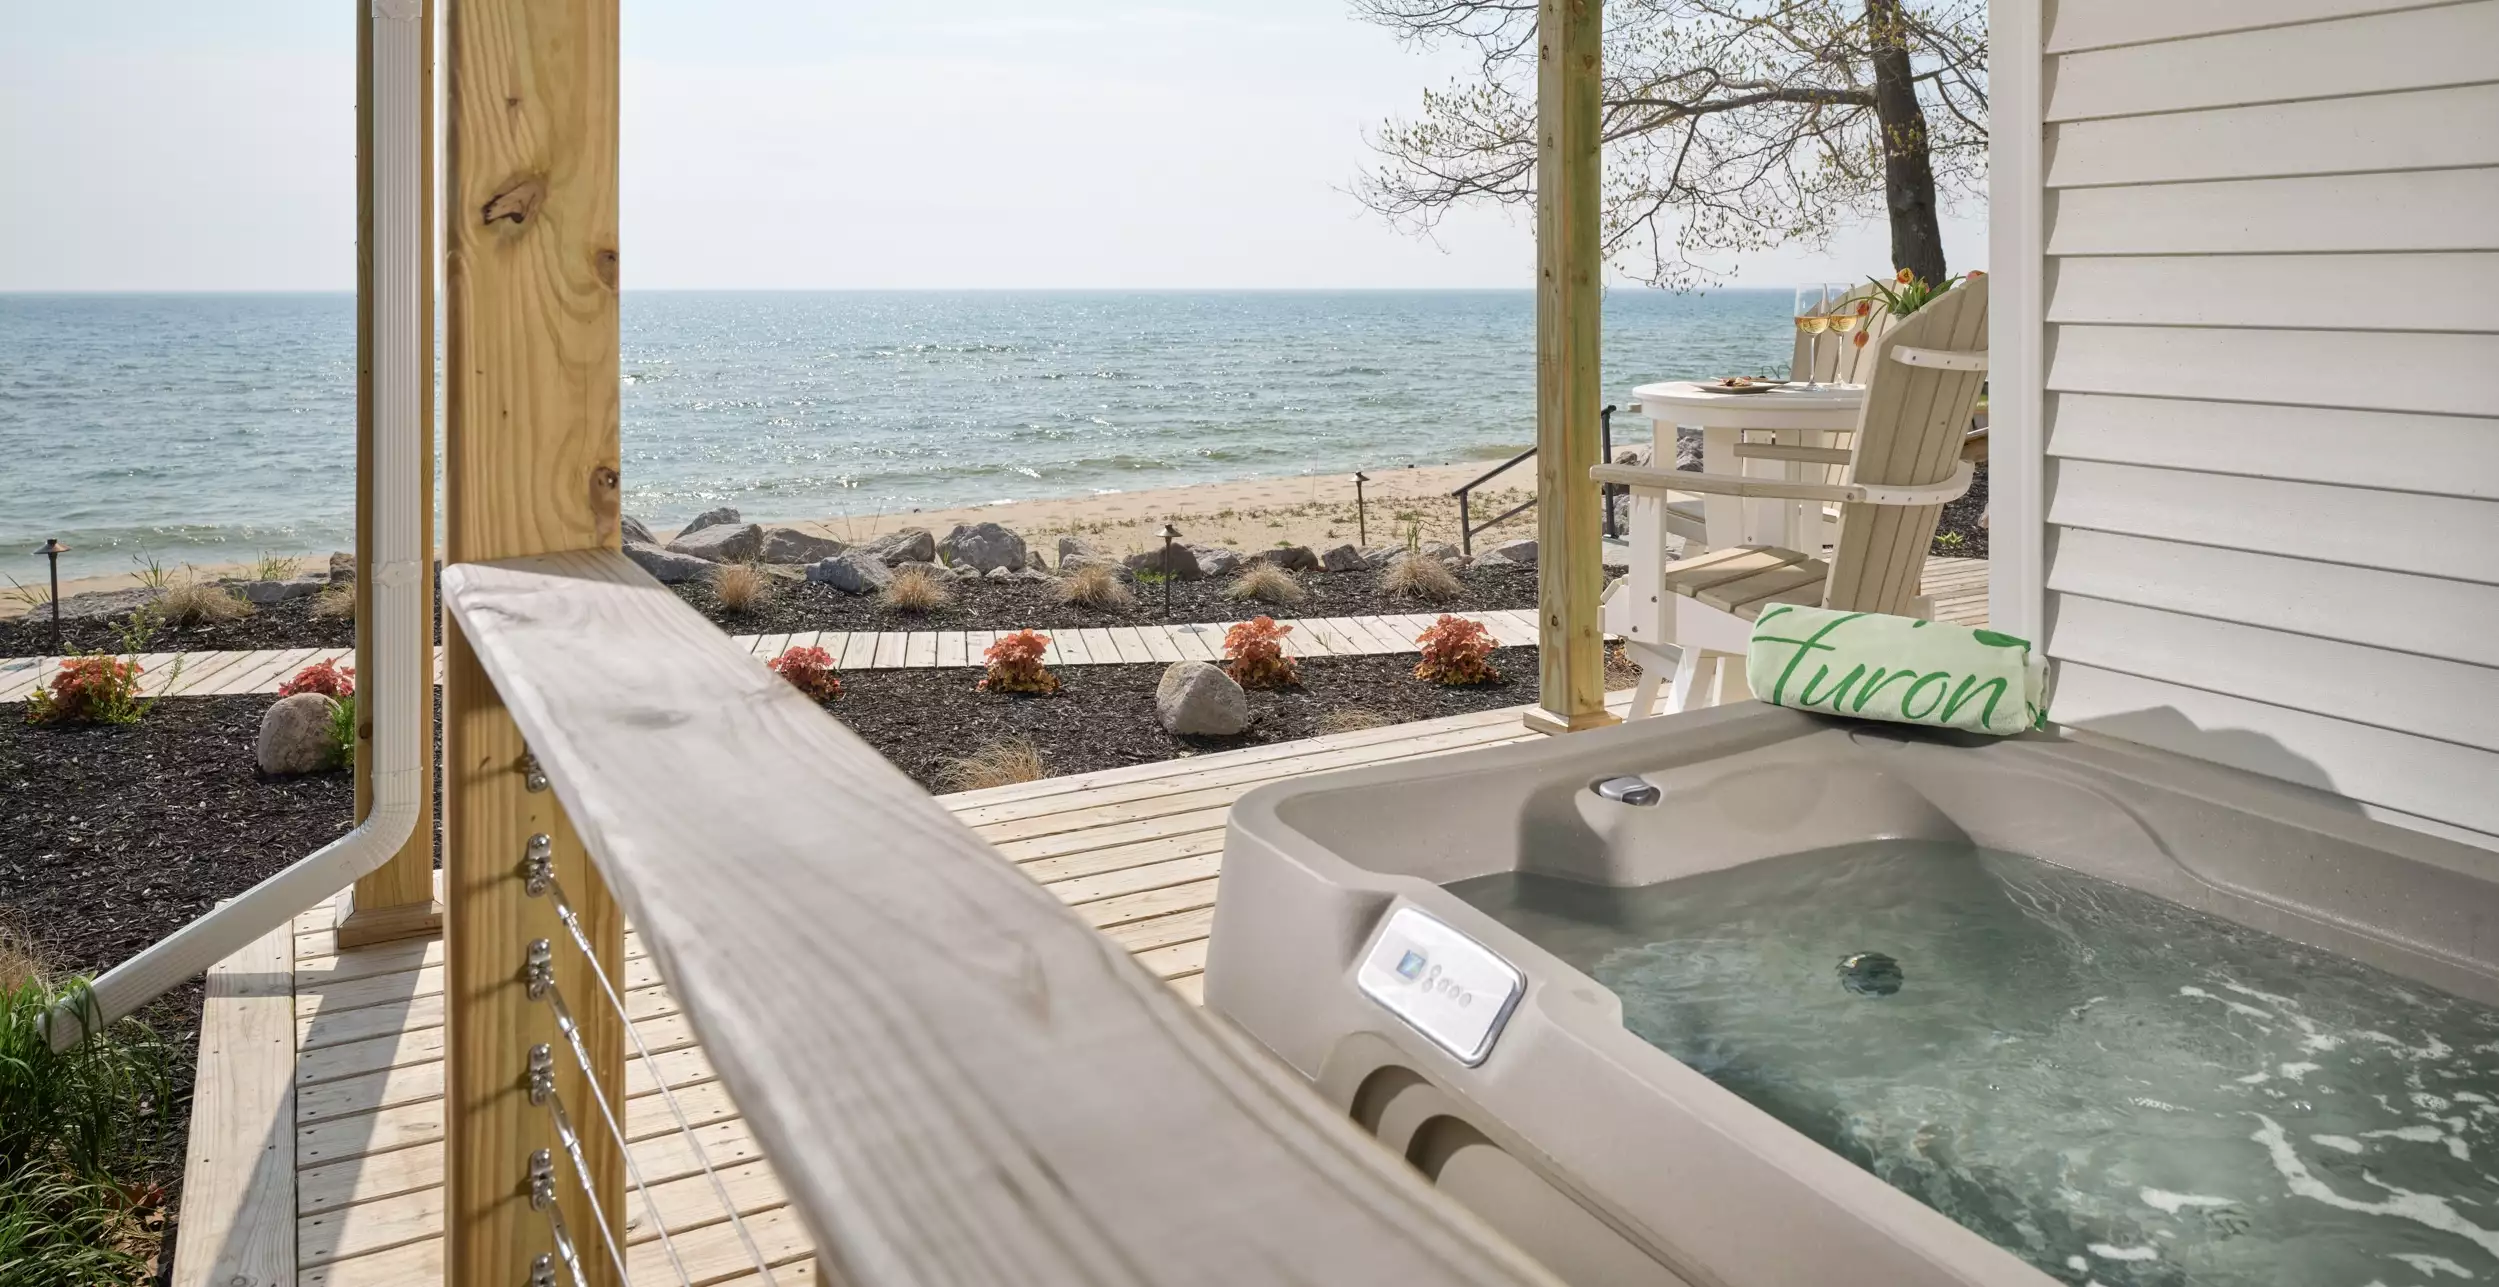 Outdoor hot tub with Lake Huron views